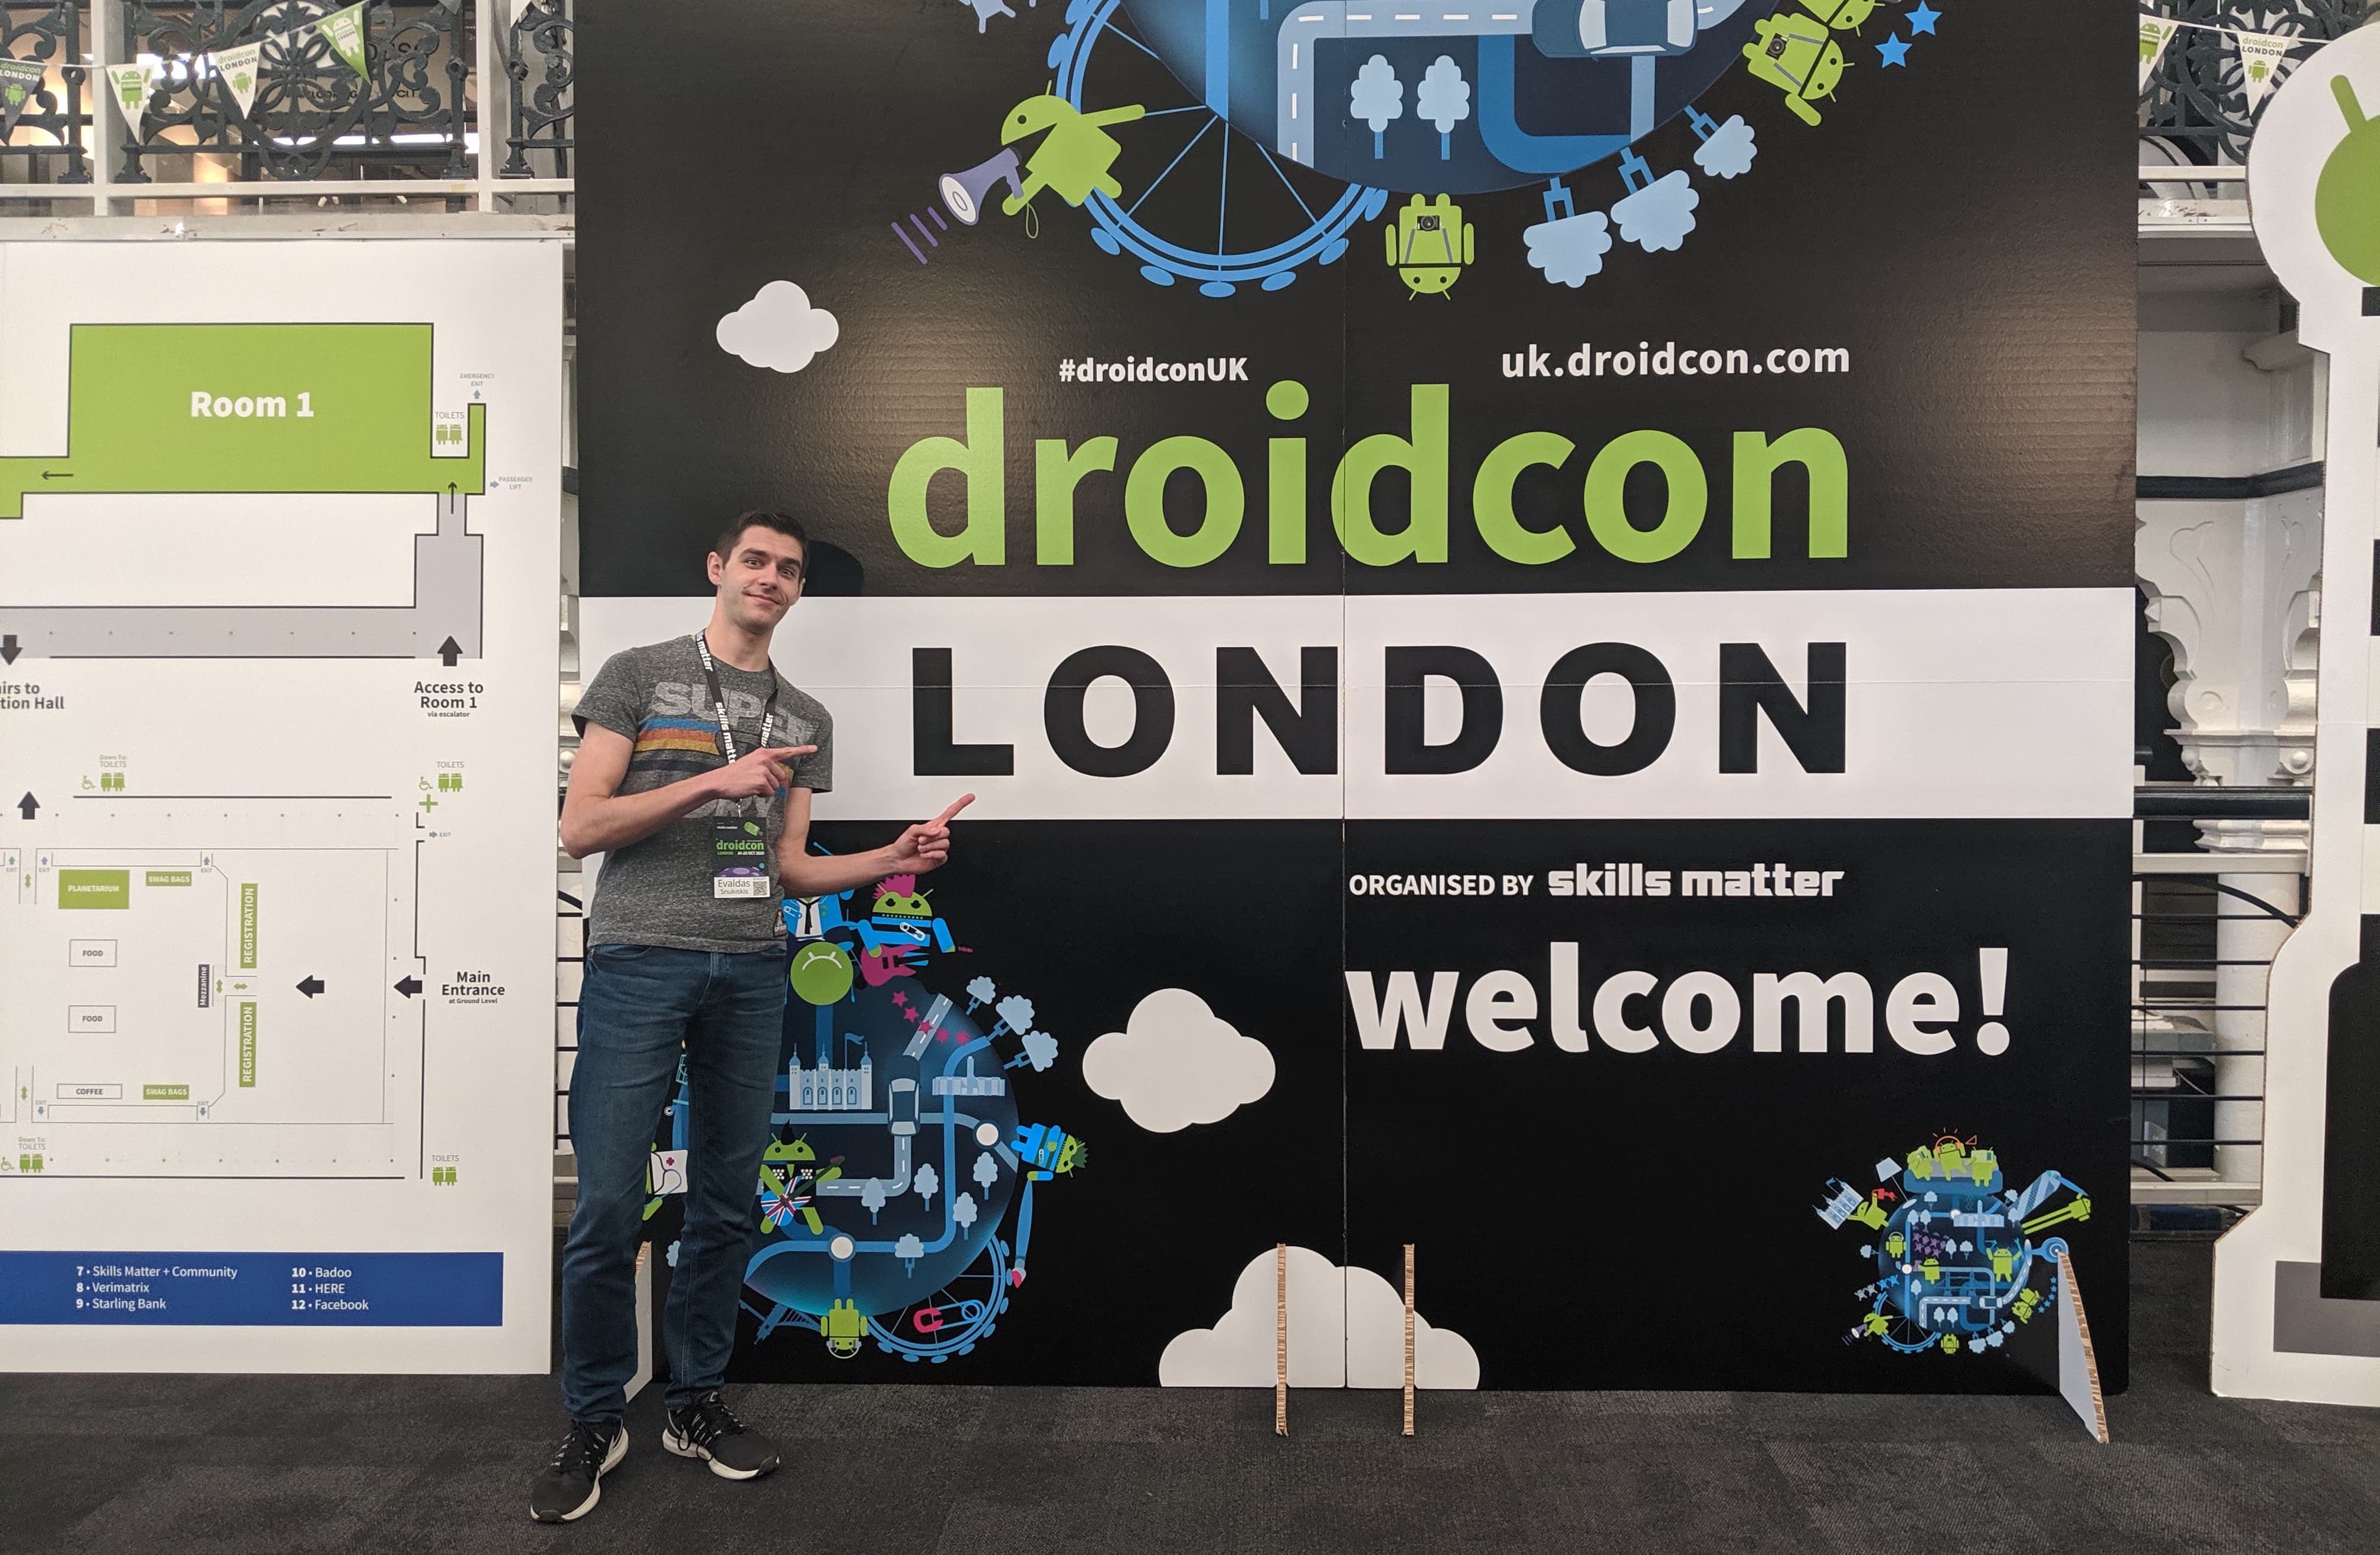 Droidcon London event image